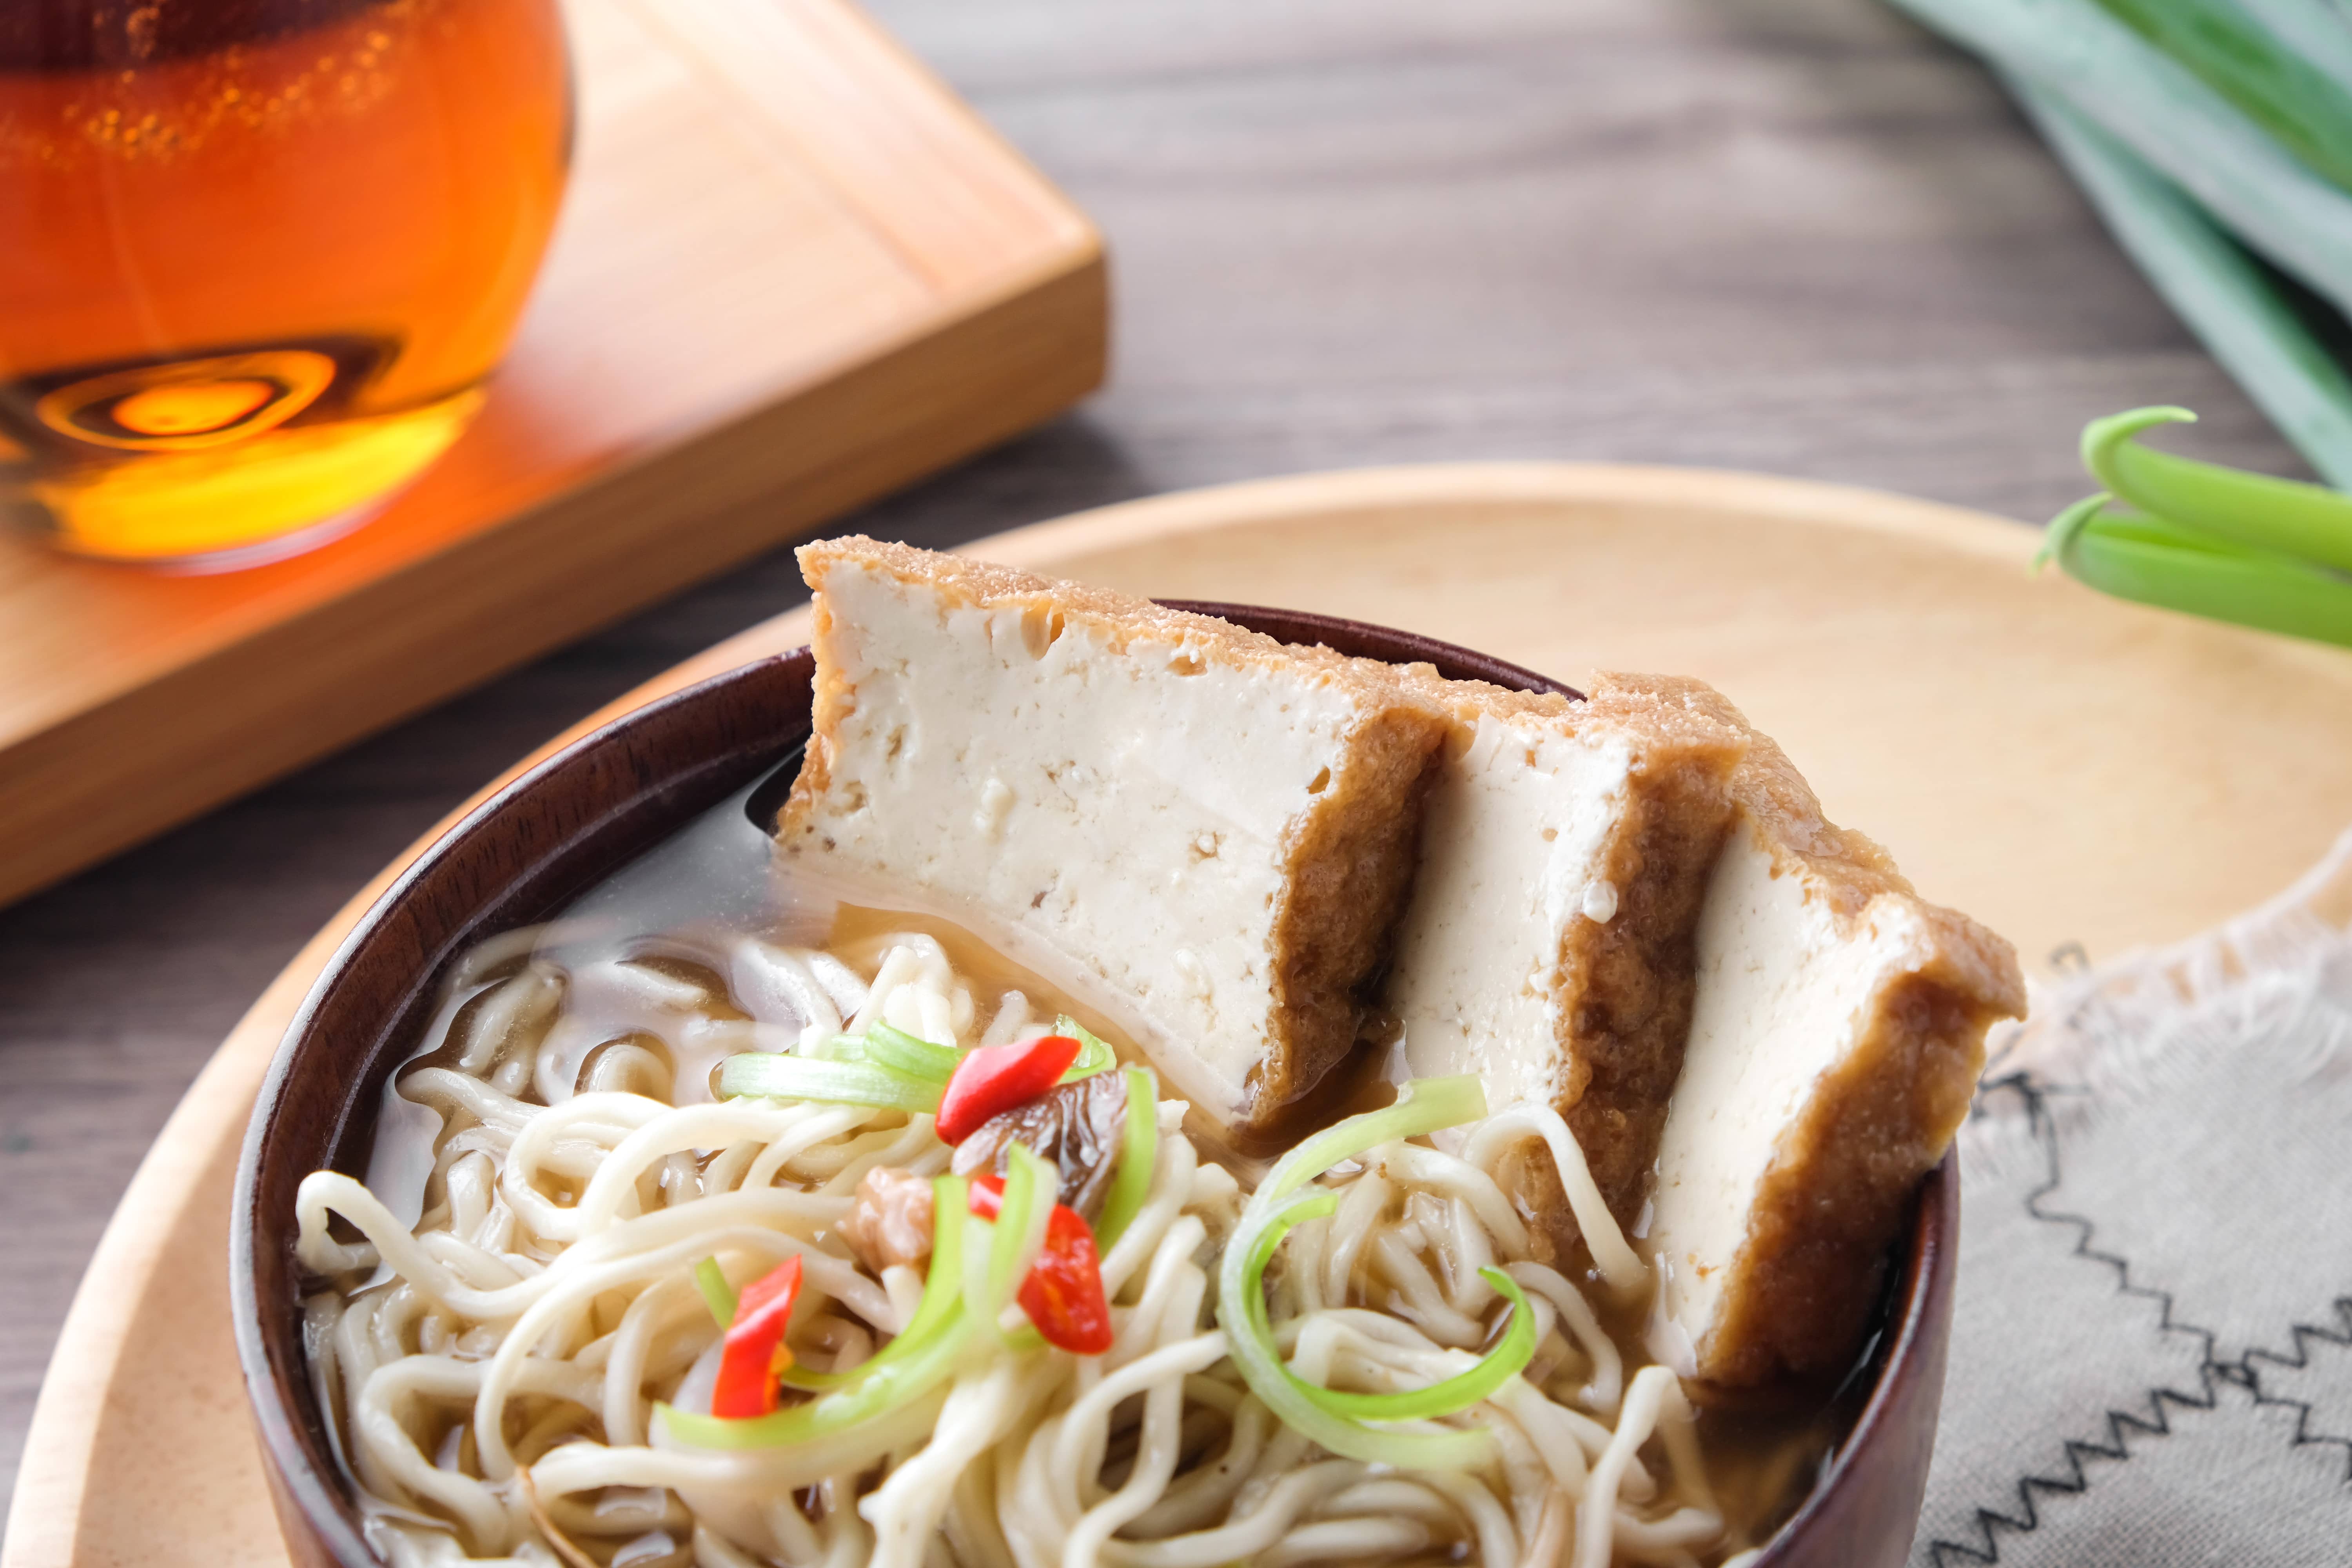 中華非基改黃金豆腐 - 線上購物 - 中華食品